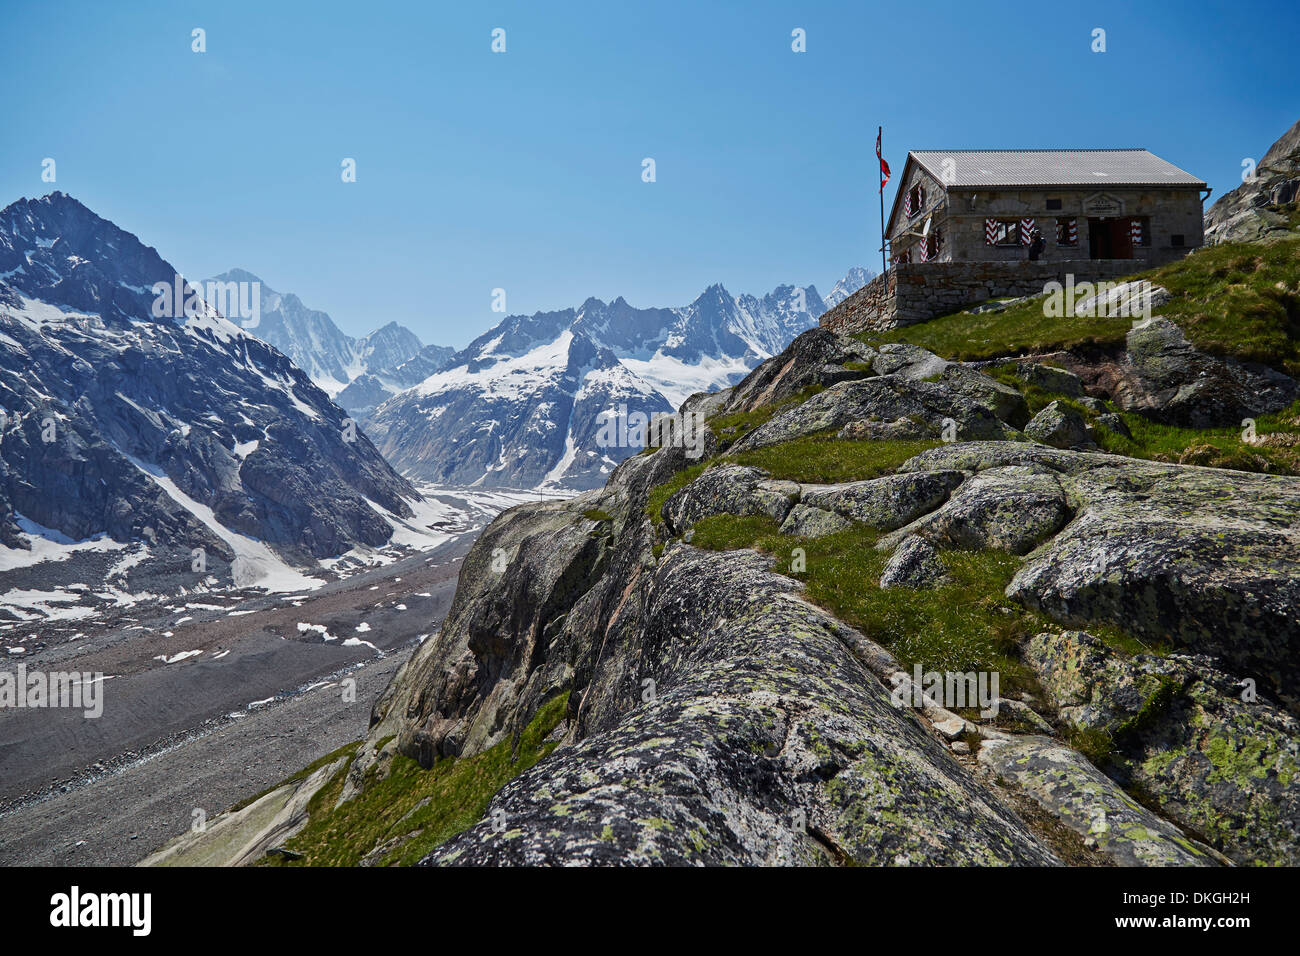 Lauteraar hut above Lauteraar Glacier with Finsteraarhorn, Bernese Oberland, Switzerland Stock Photo